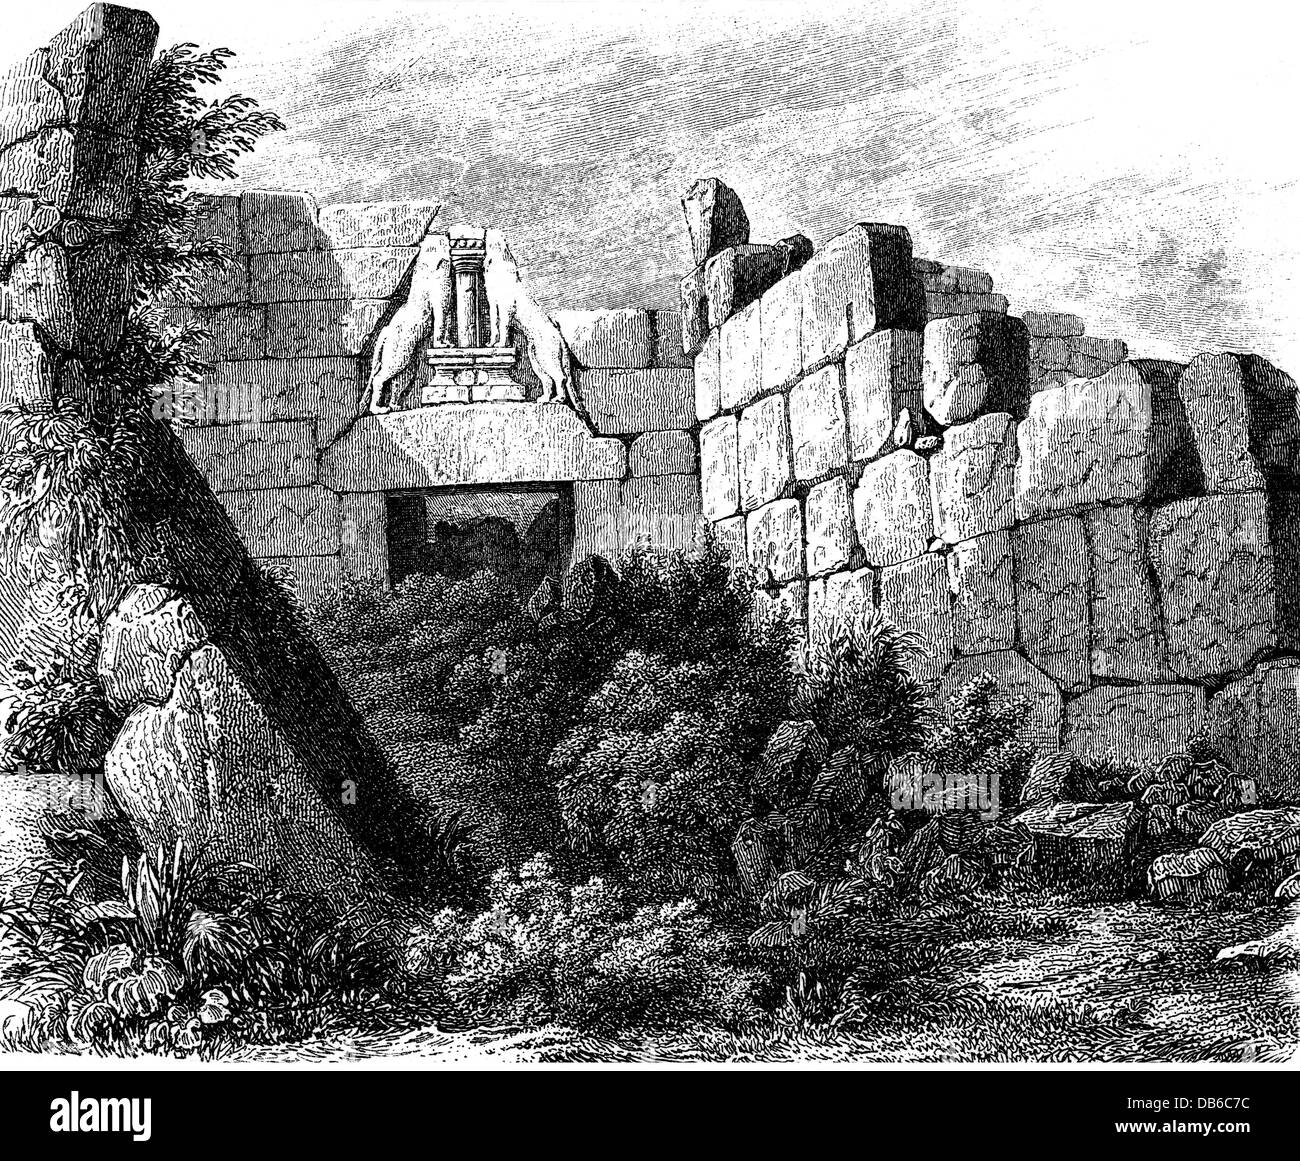 Géographie / Voyage, Grèce, Mycenae, porte de lion, vue, gravure en bois après dessin par Blouet, 1893, droits additionnels-Clearences-non disponible Banque D'Images